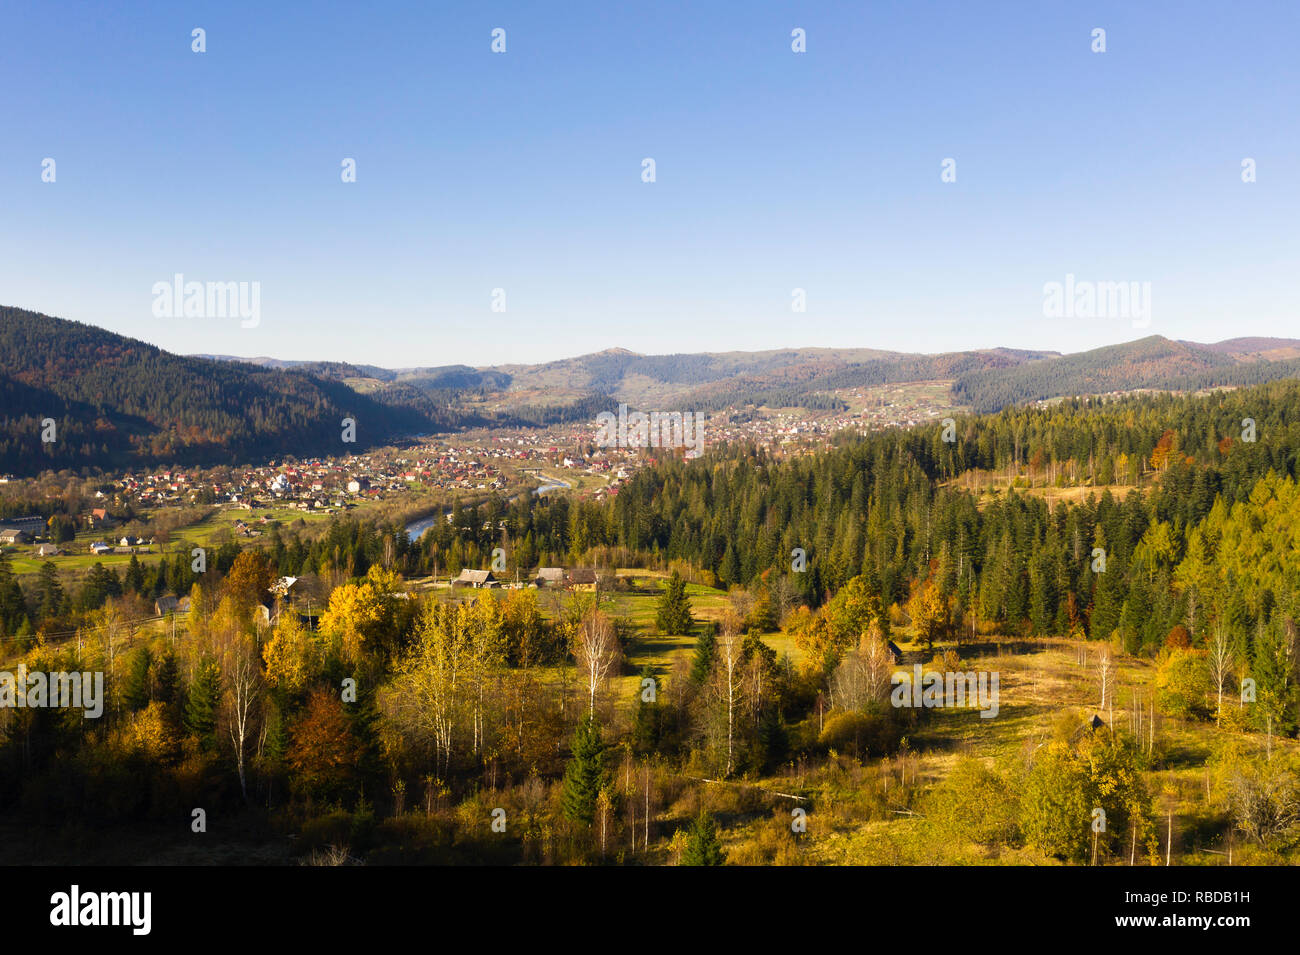 Vista aérea de la zona rural de otoño, Yaremche, oblast de Ivano-Frankivsk, Ucrania Foto de stock